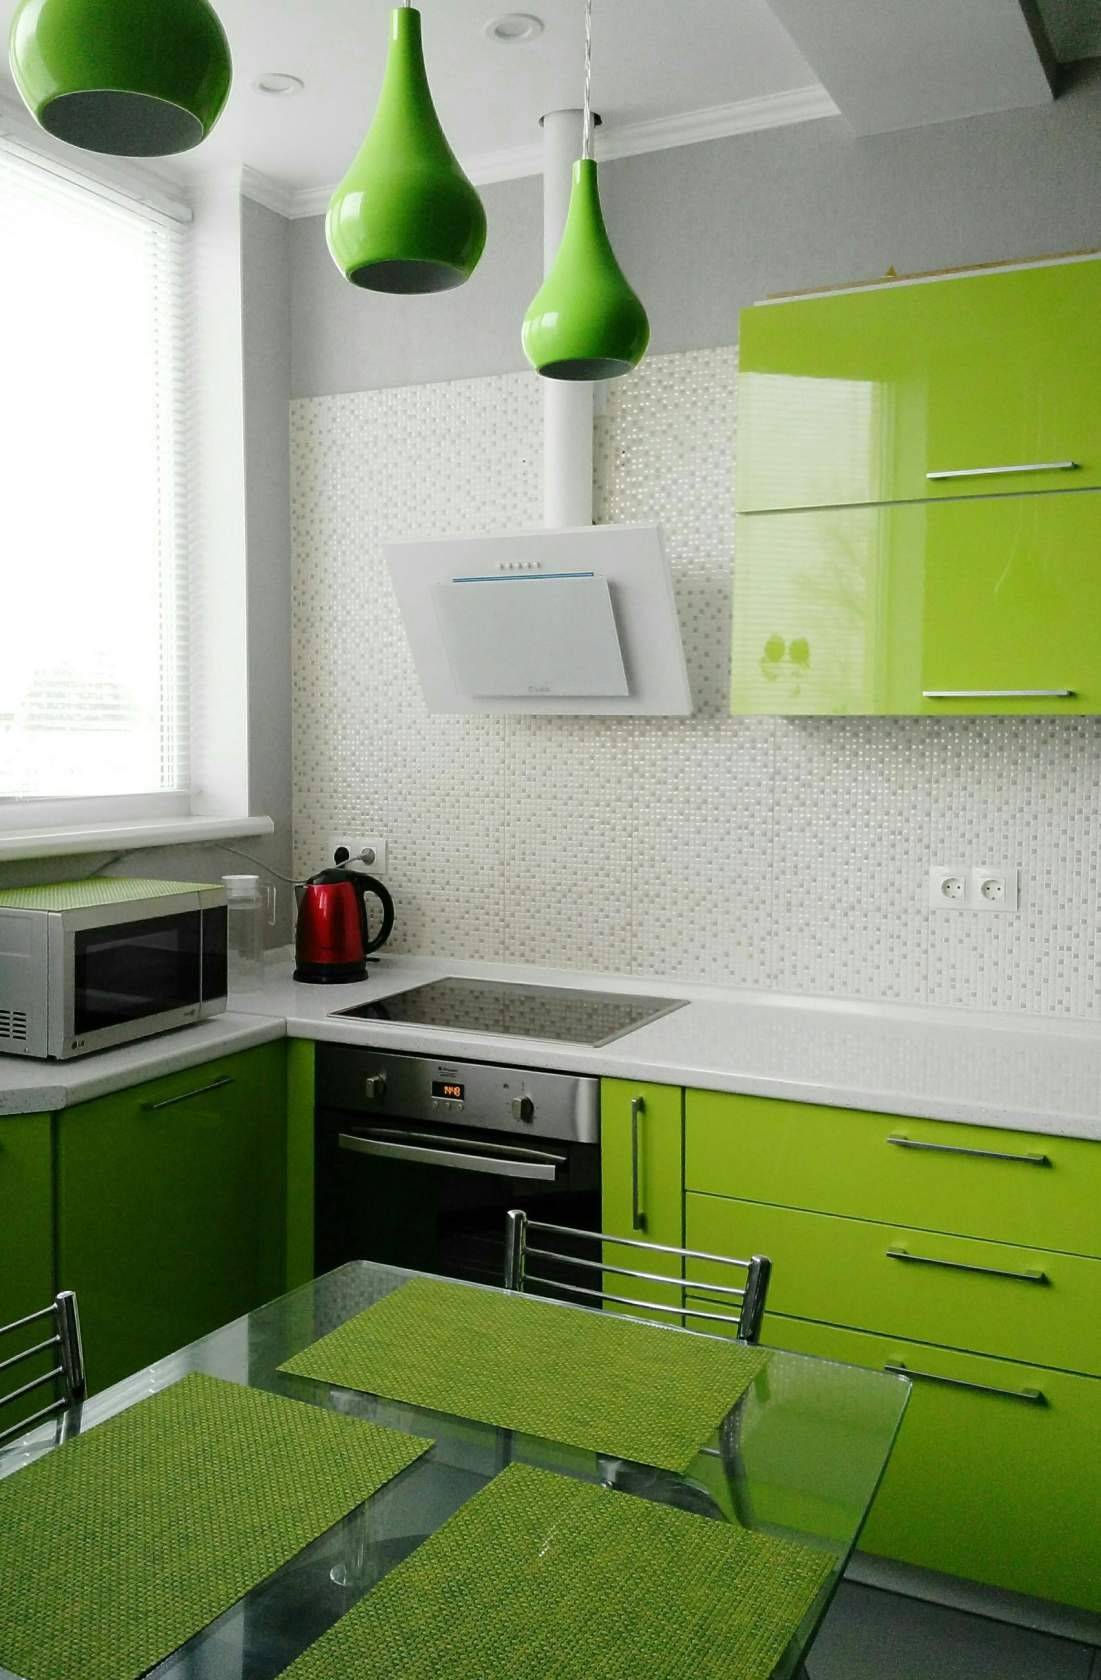 Зеленая кухня в интерьере, на что обратить внимание при выборе дизайна! более 80 фото кухни зеленого цвета!